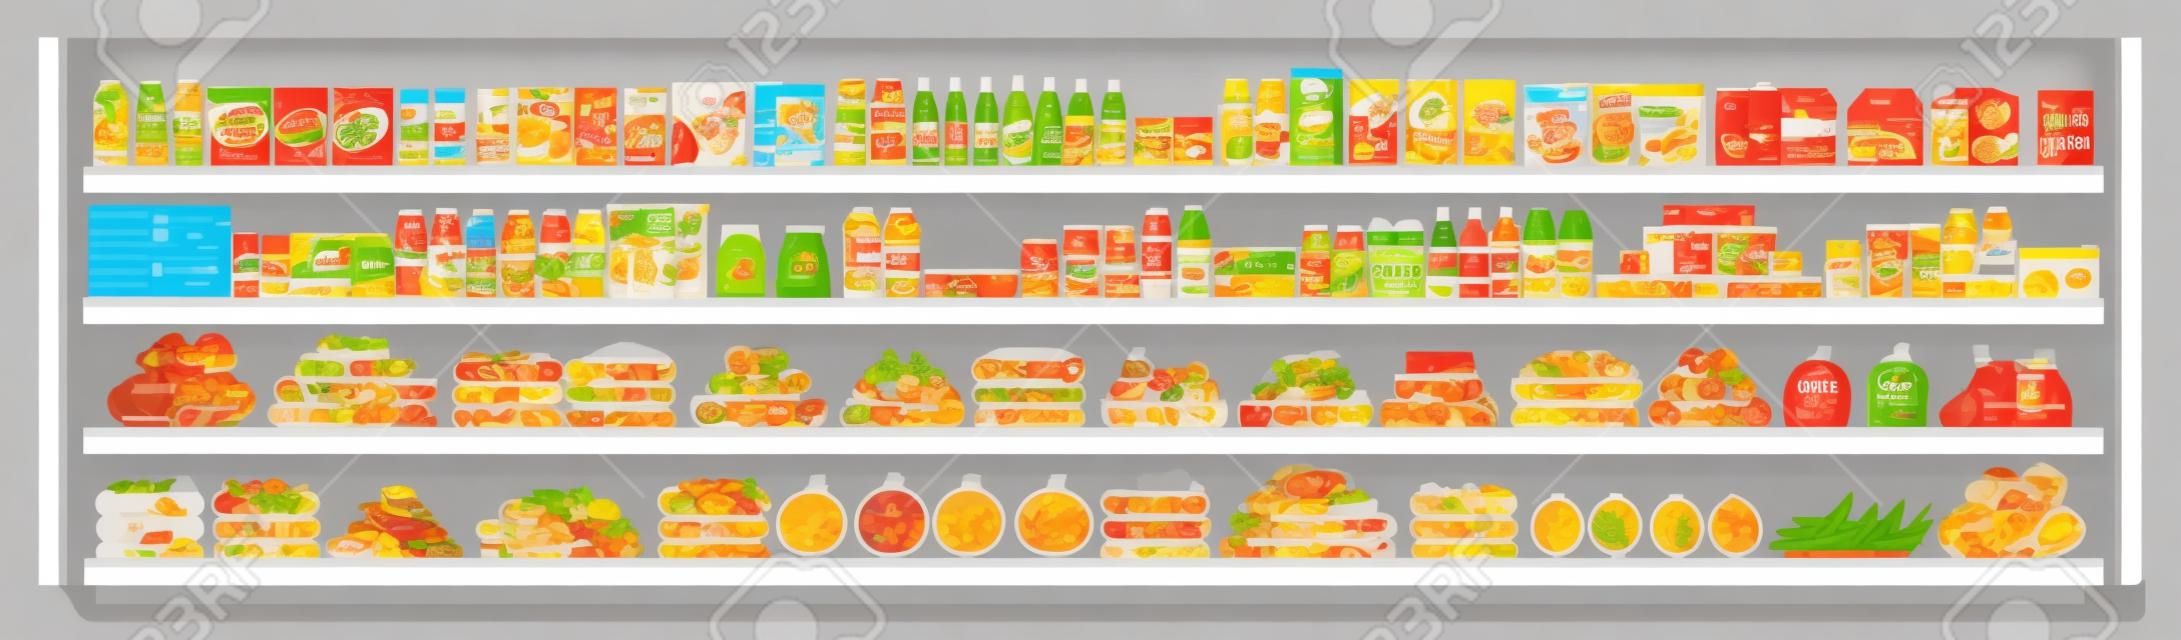 Artículos comestibles en los estantes de los supermercados y ofertas llenas de surtido de alimentos y bebidas ilustración de fondo transparente de vector plano. Concepto comercial y minorista.